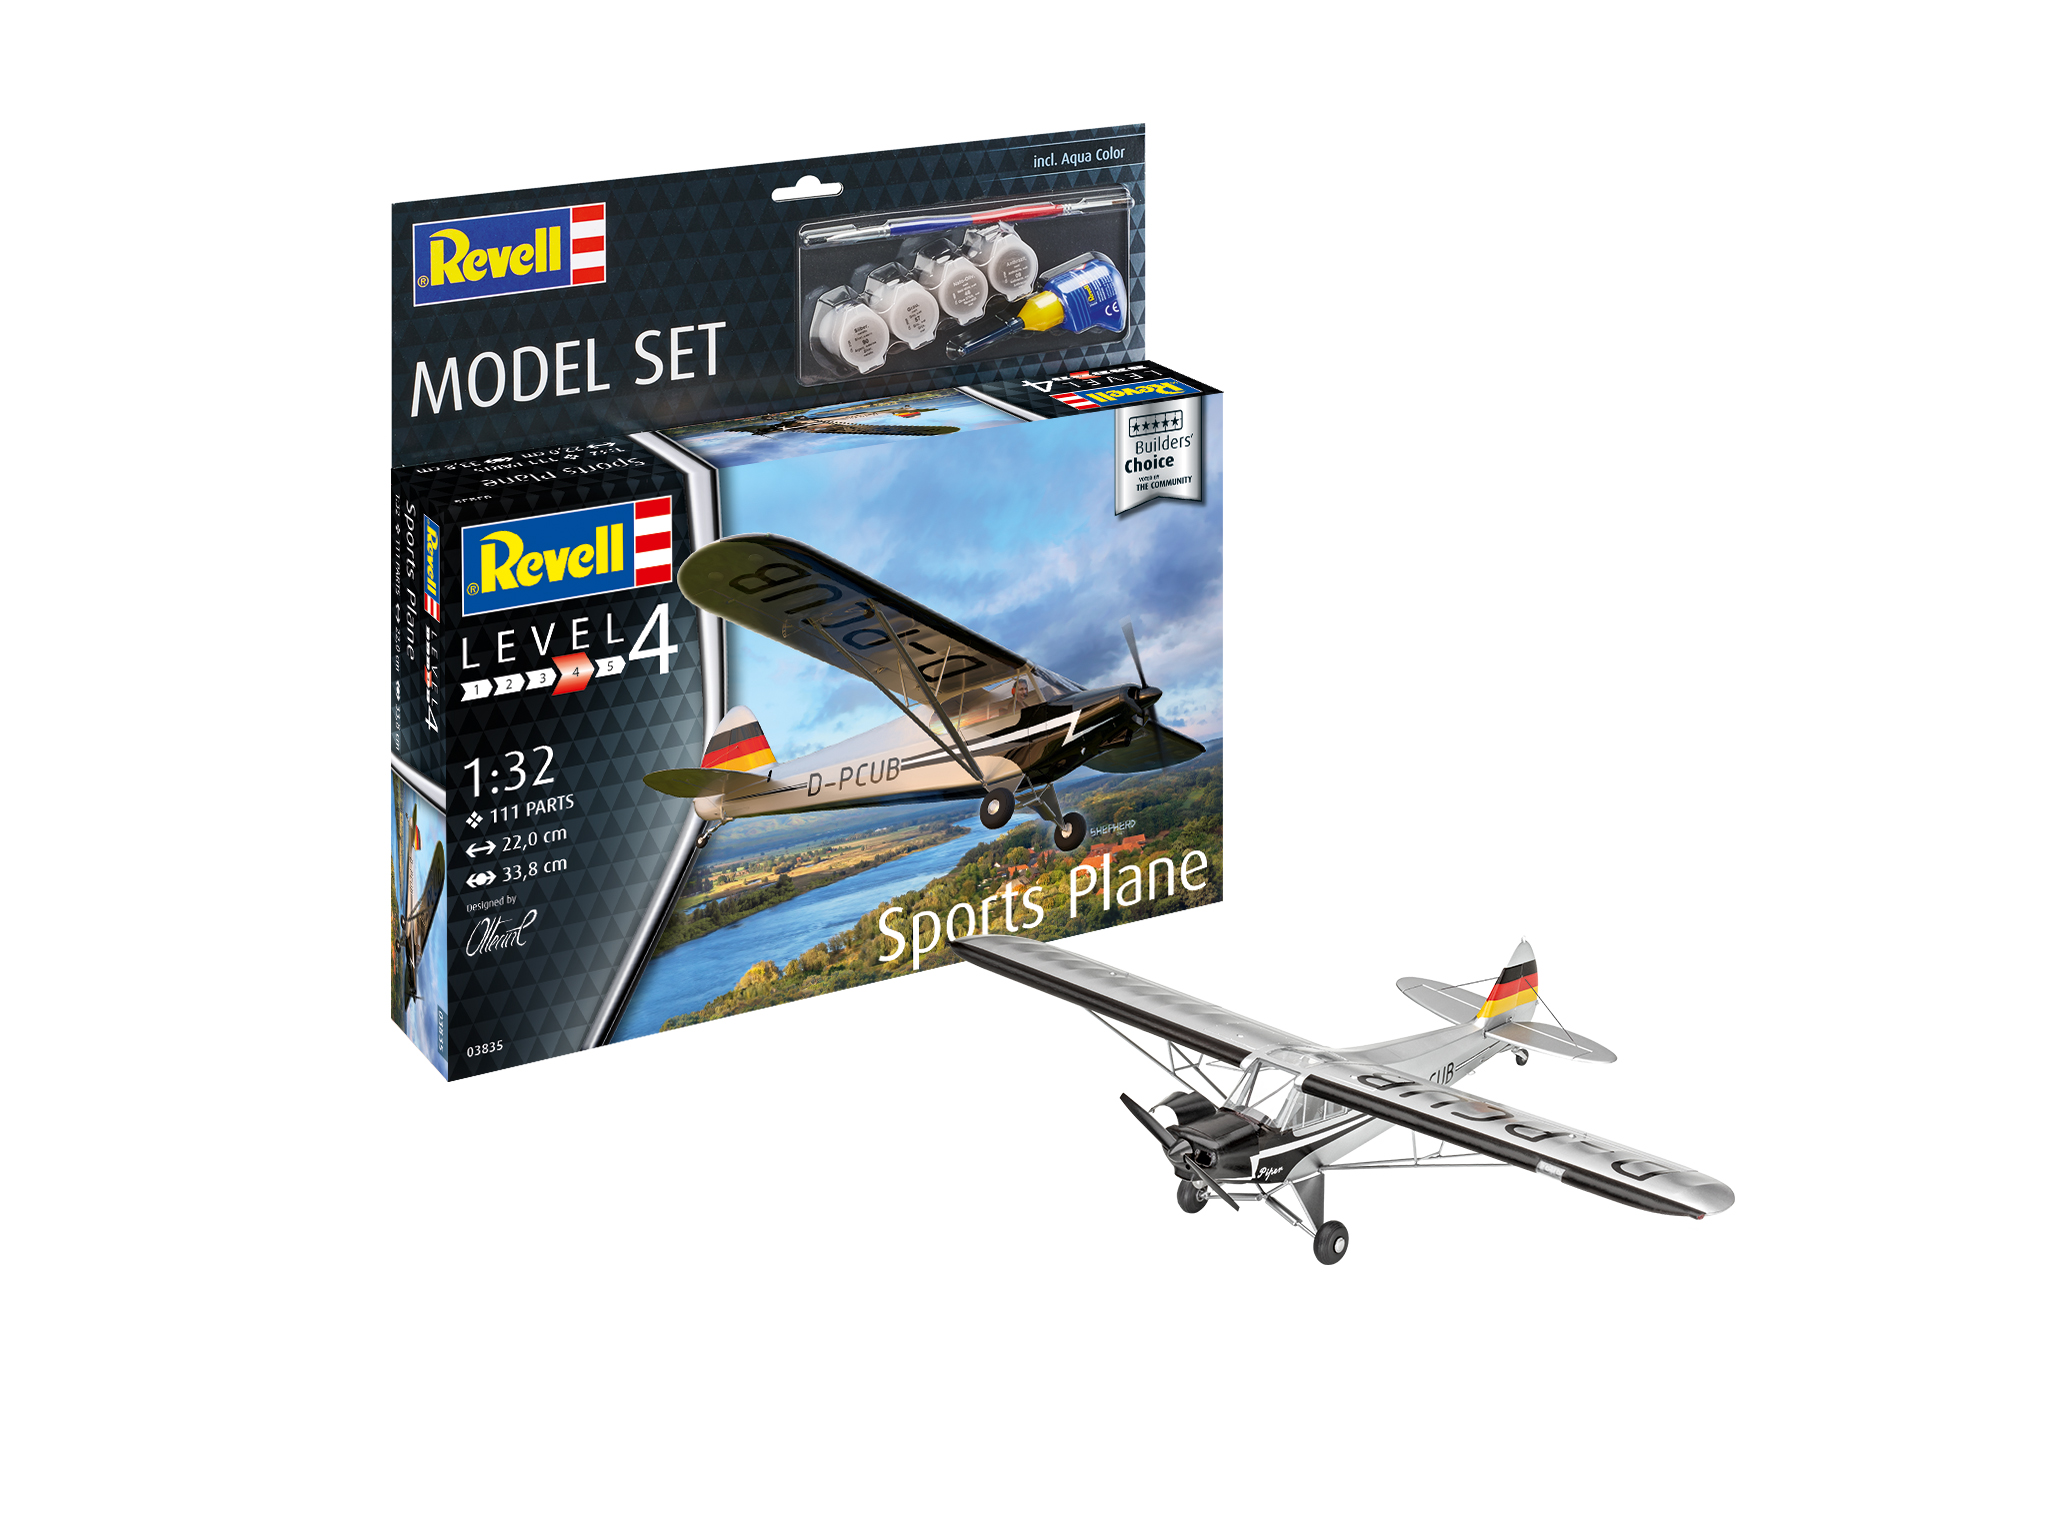 Revell Model Set Sports Plane "Builder's Choice" in 1:32 bouwpakket met lijm en verf